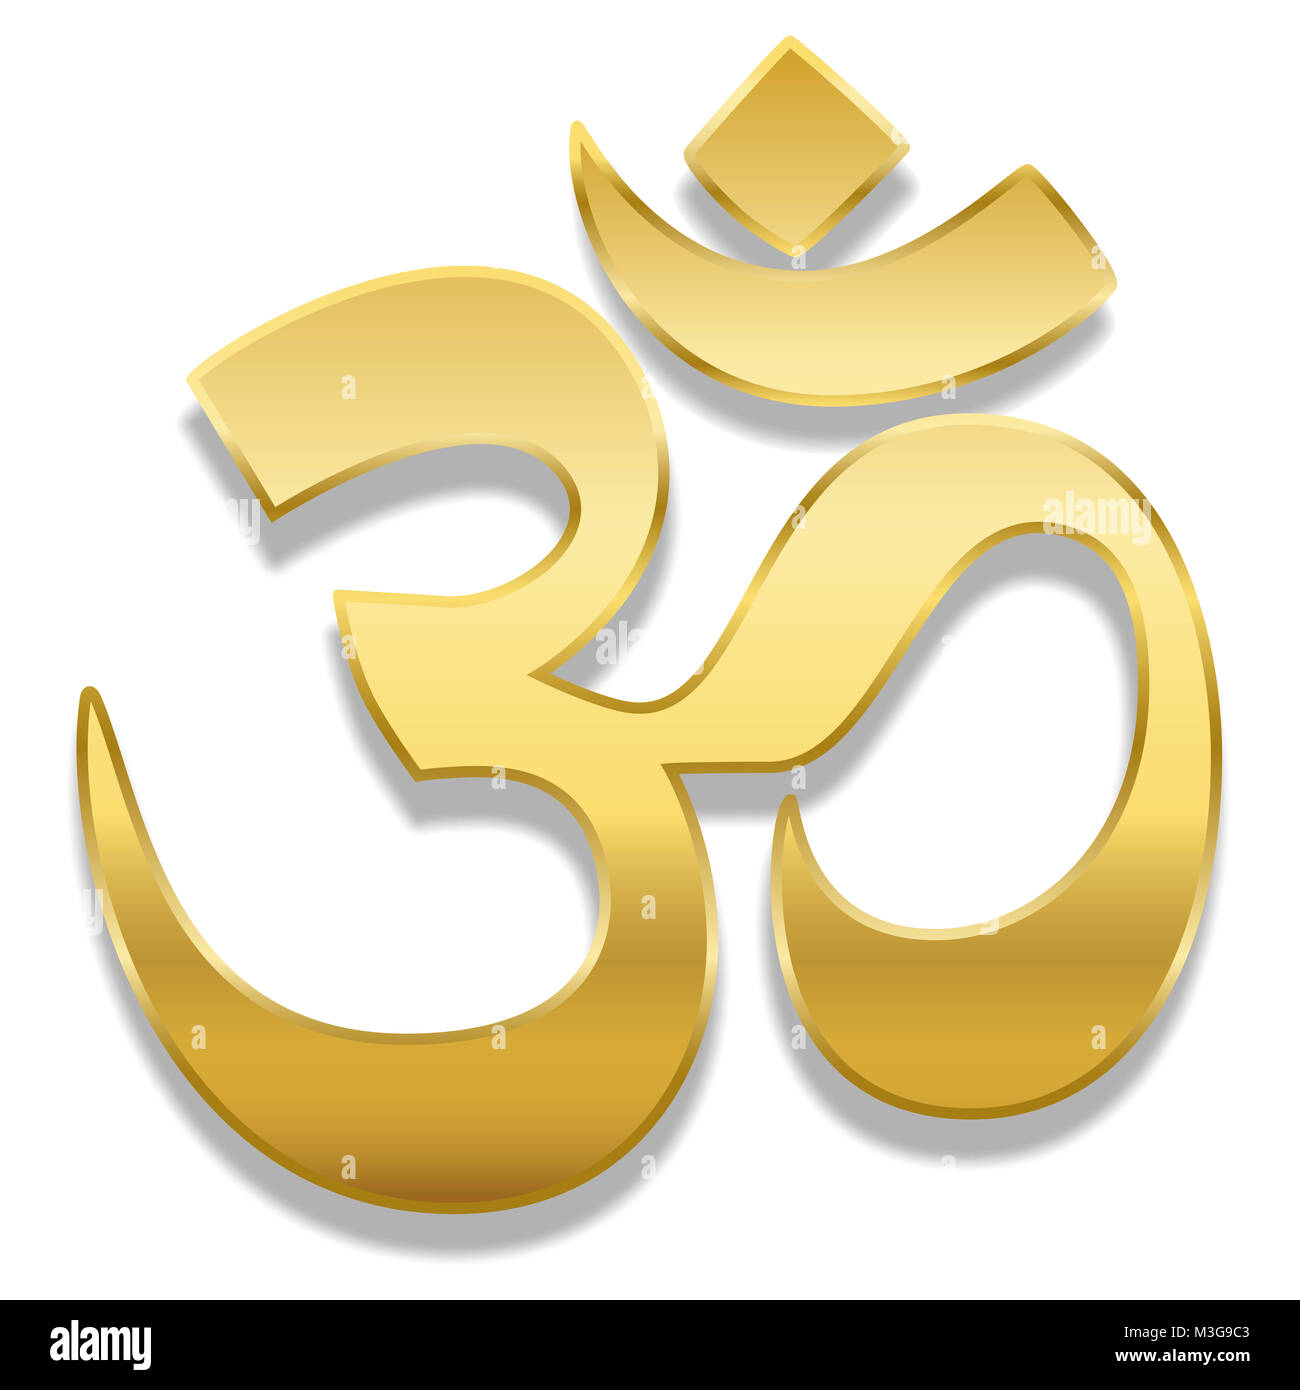 Golden Aum oder Om Symbol. Spirituelle Heilung Symbol von Hinduismus und Buddhismus - Abbildung auf weißen Hintergrund. Stockfoto